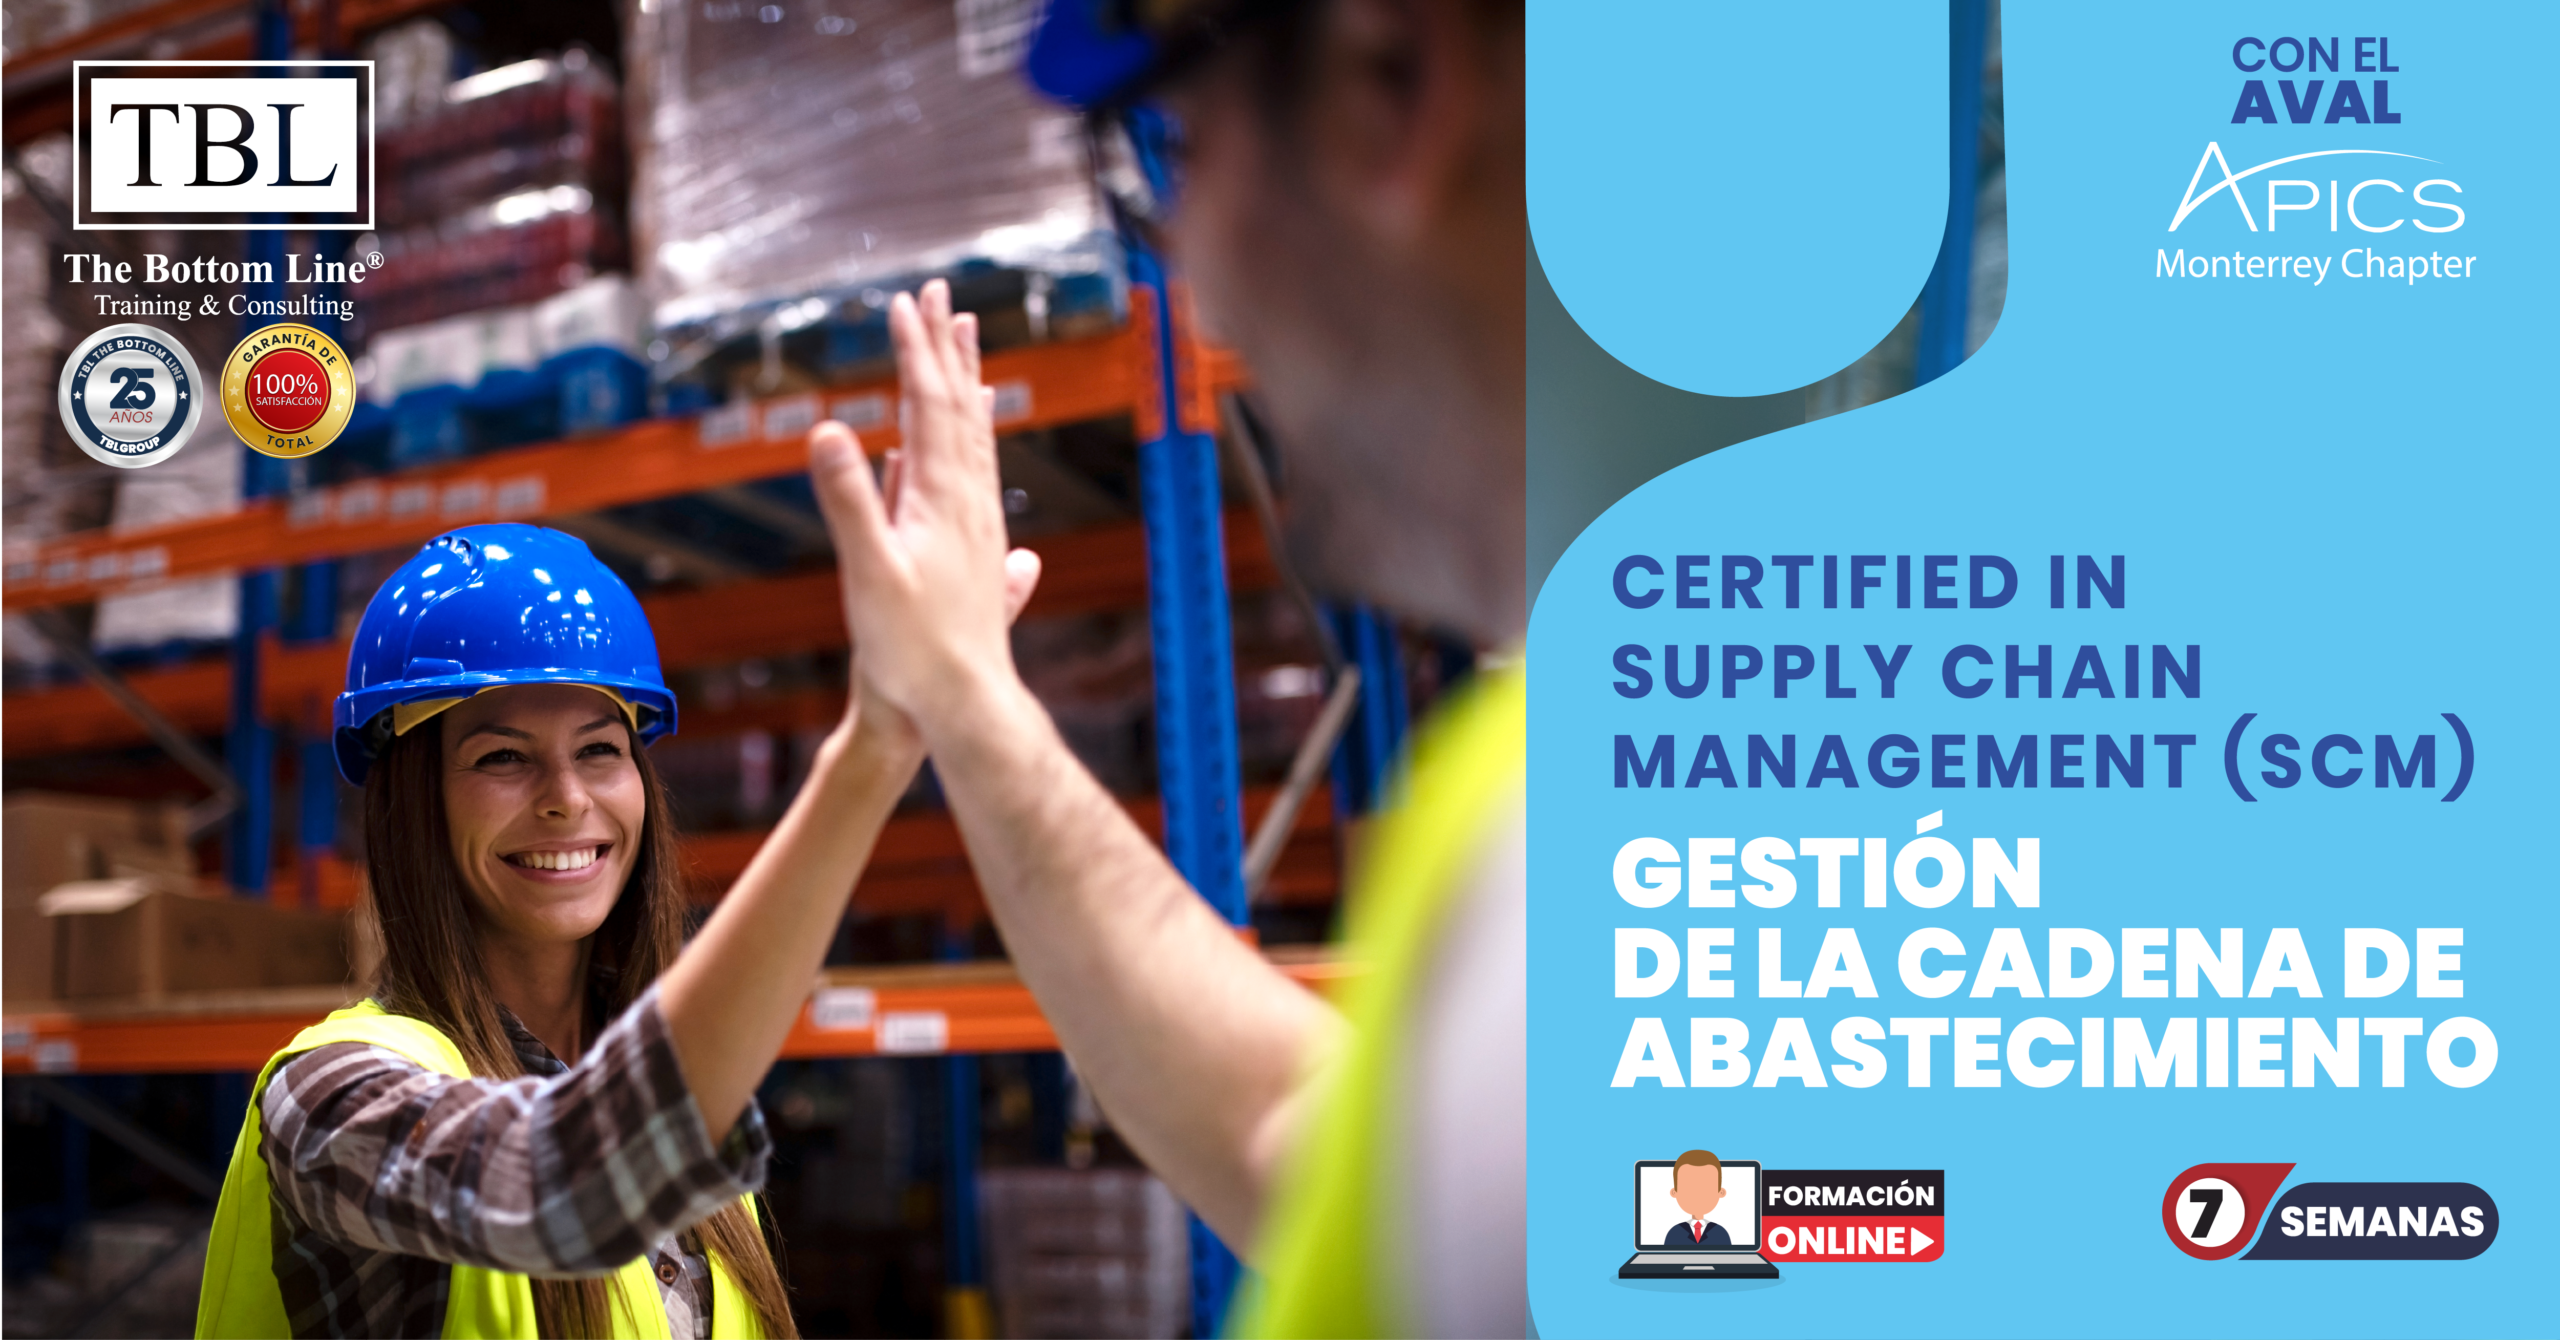 Certified In Supply Chain Management (Scm) – Gestión De La Cadena De Abastecimiento